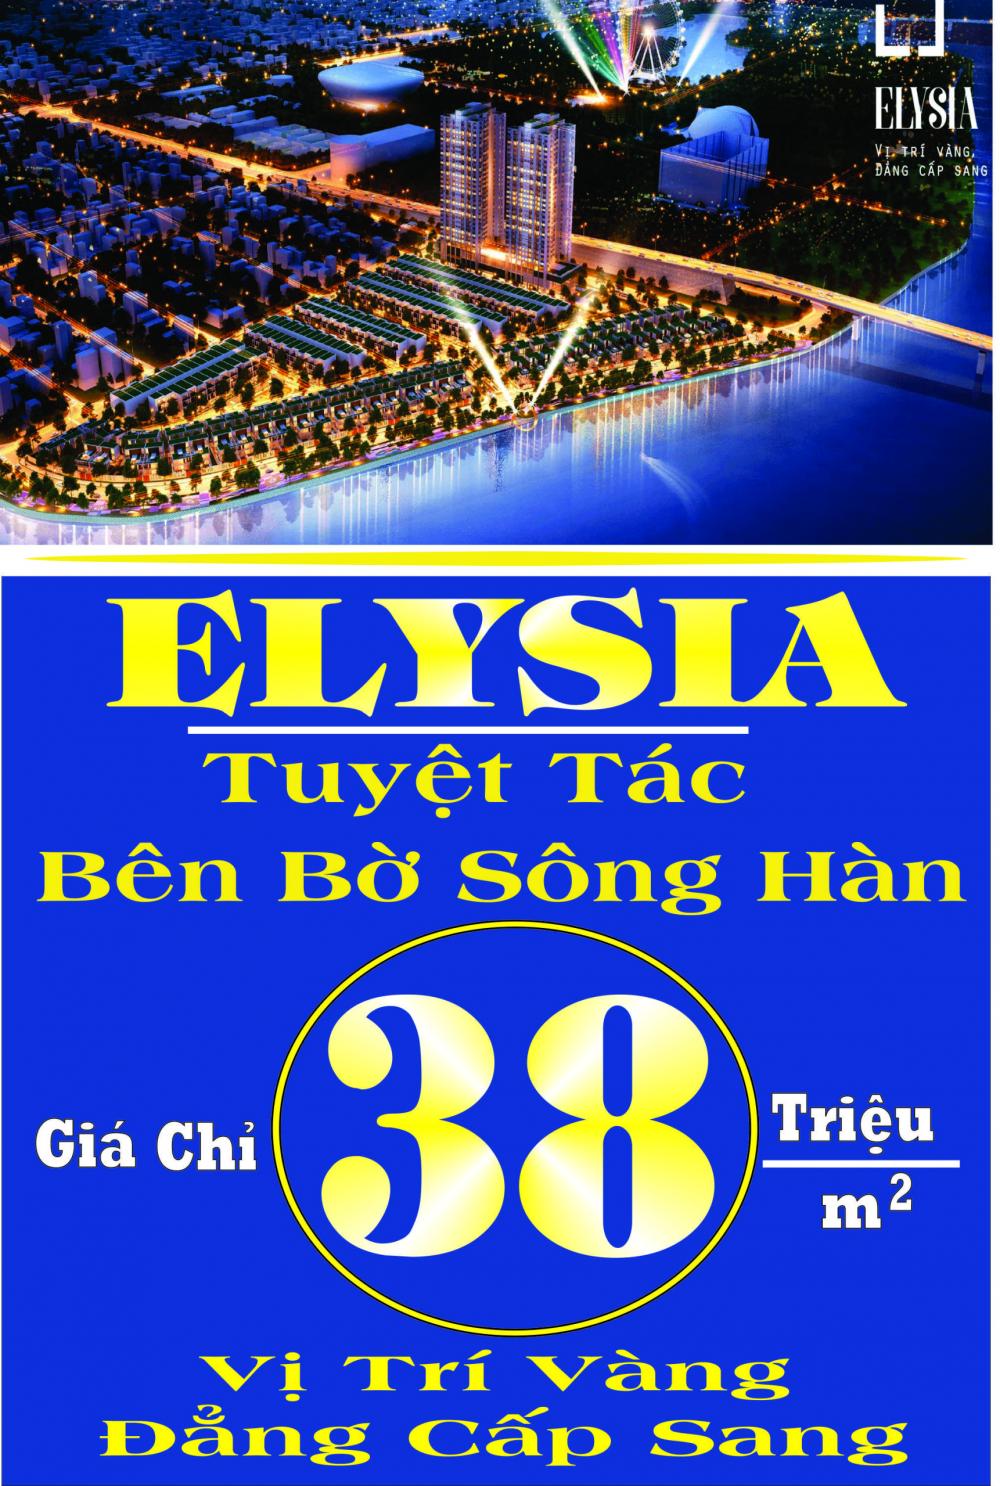 Elysia Complex City biệt thự ven sông Hàn, Đà Nẵng